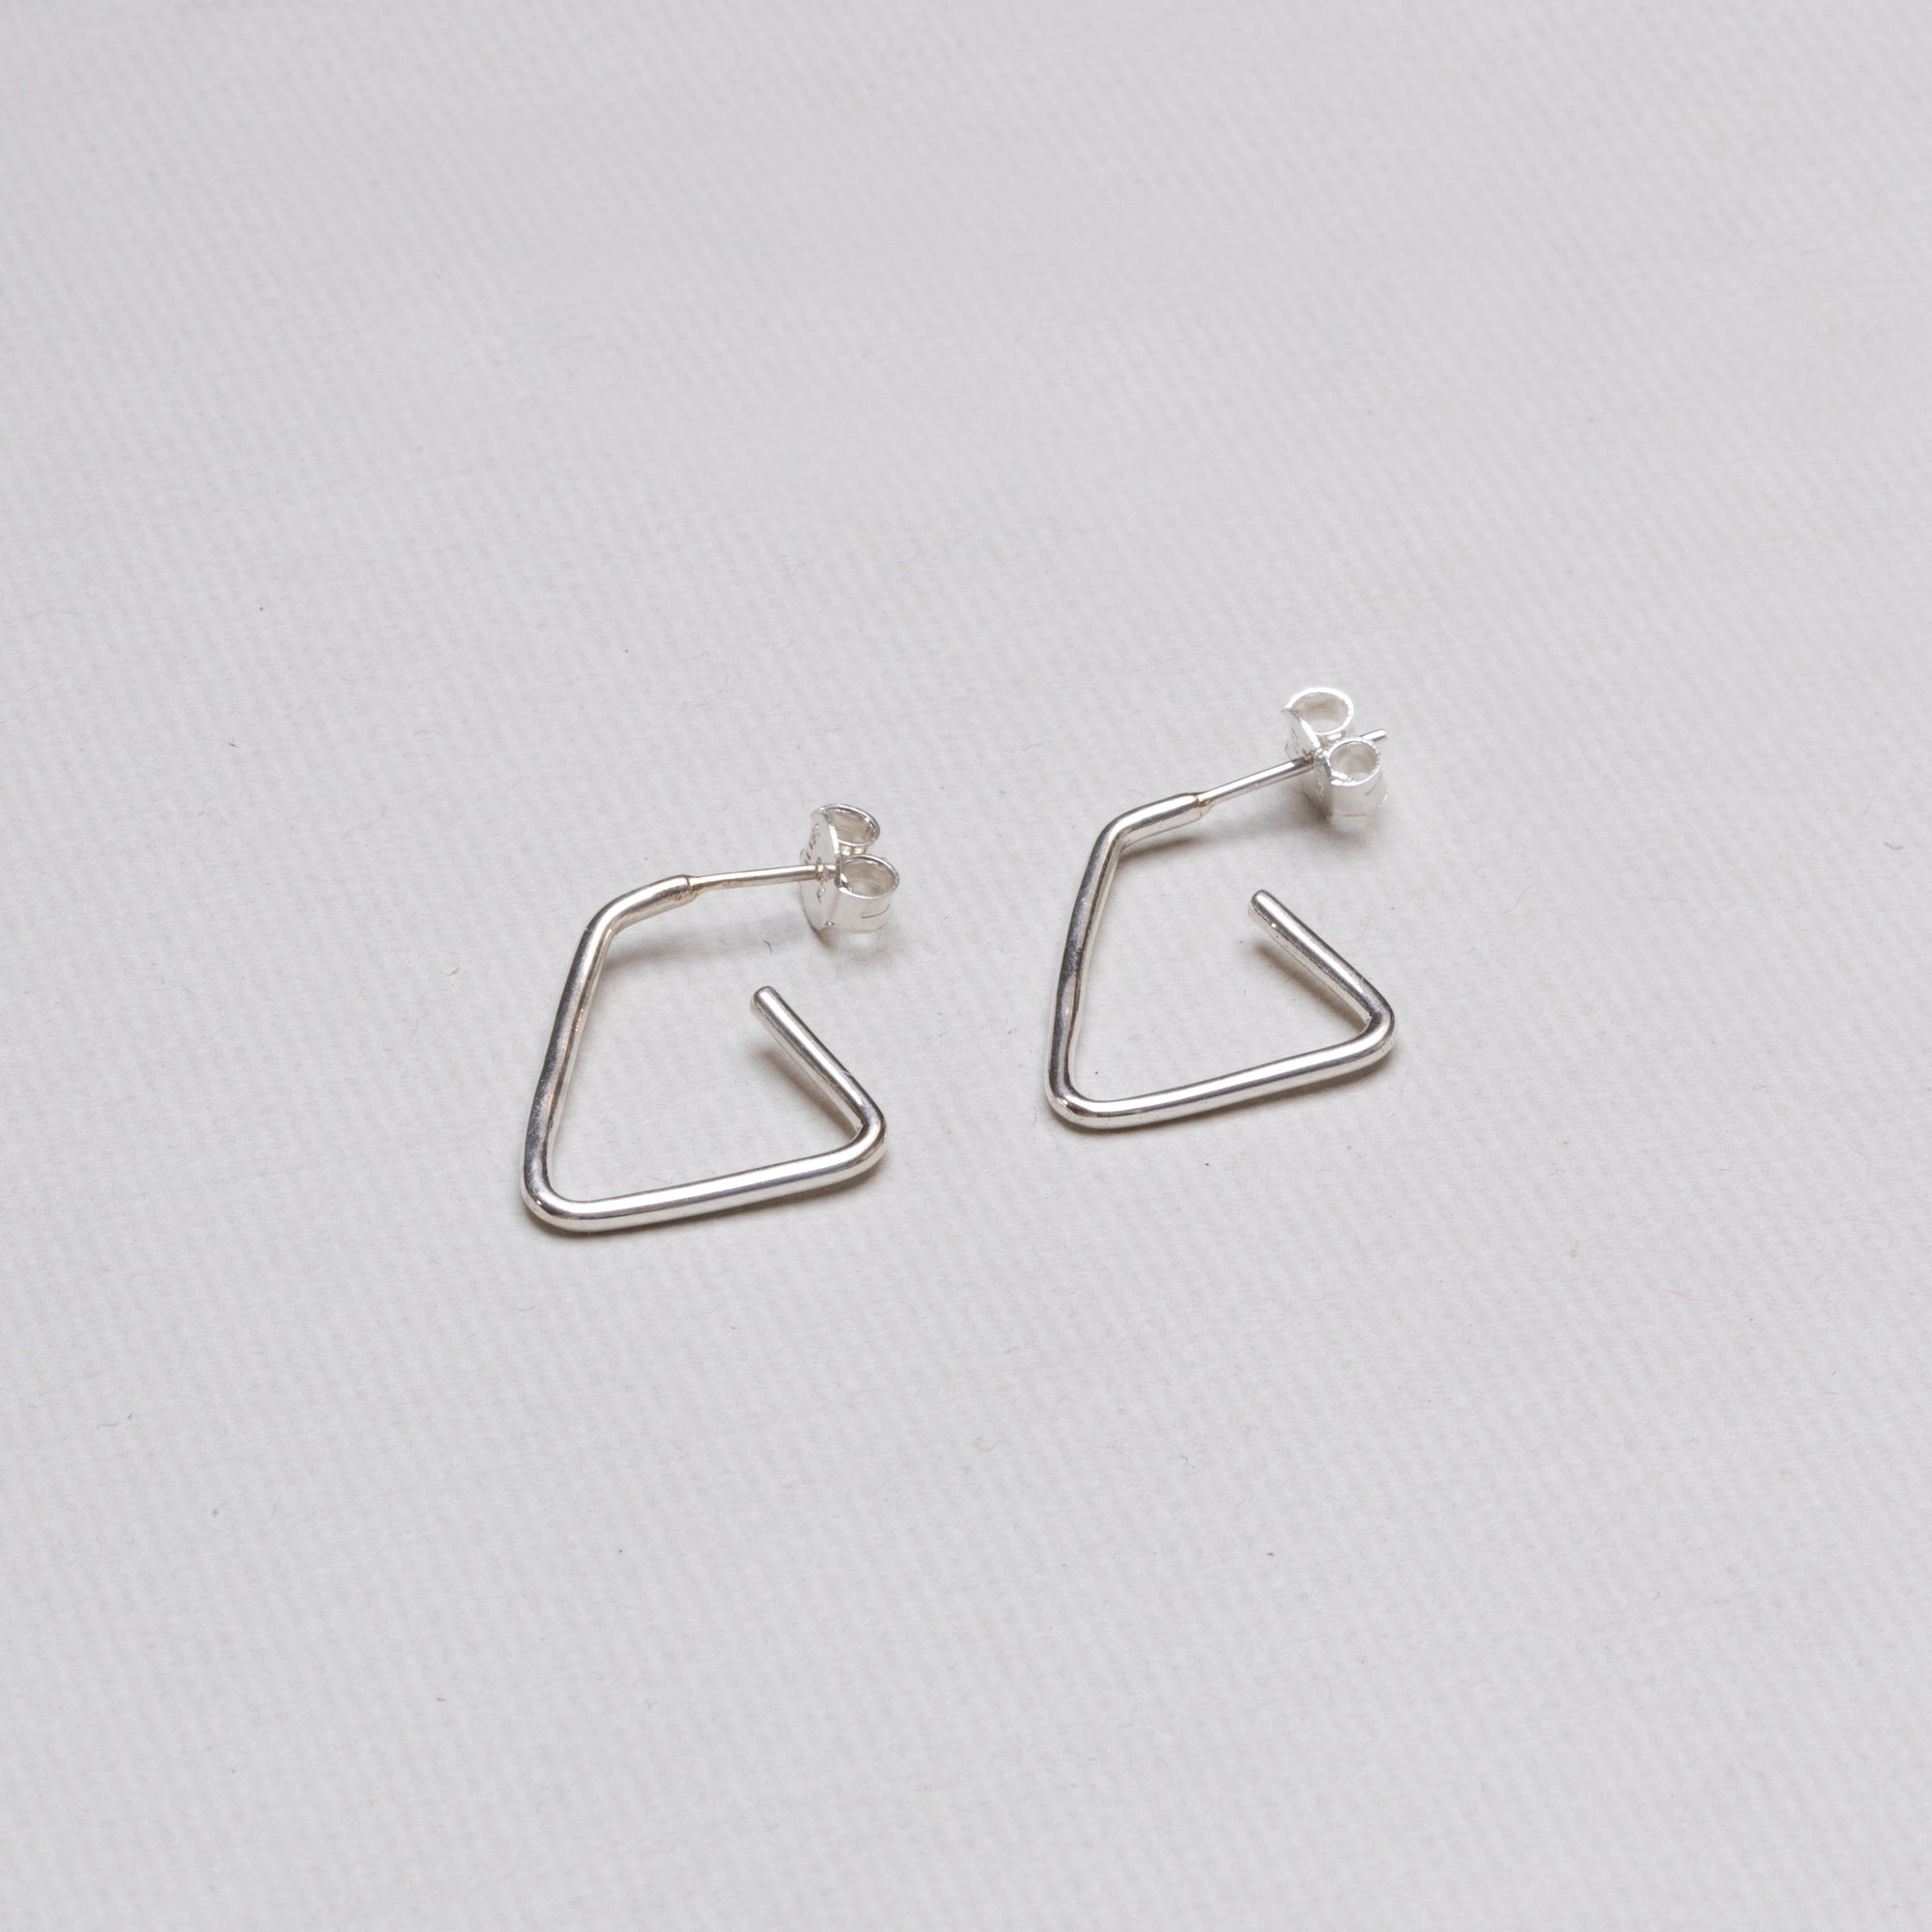 Open Silver Triangle Stud Earrings